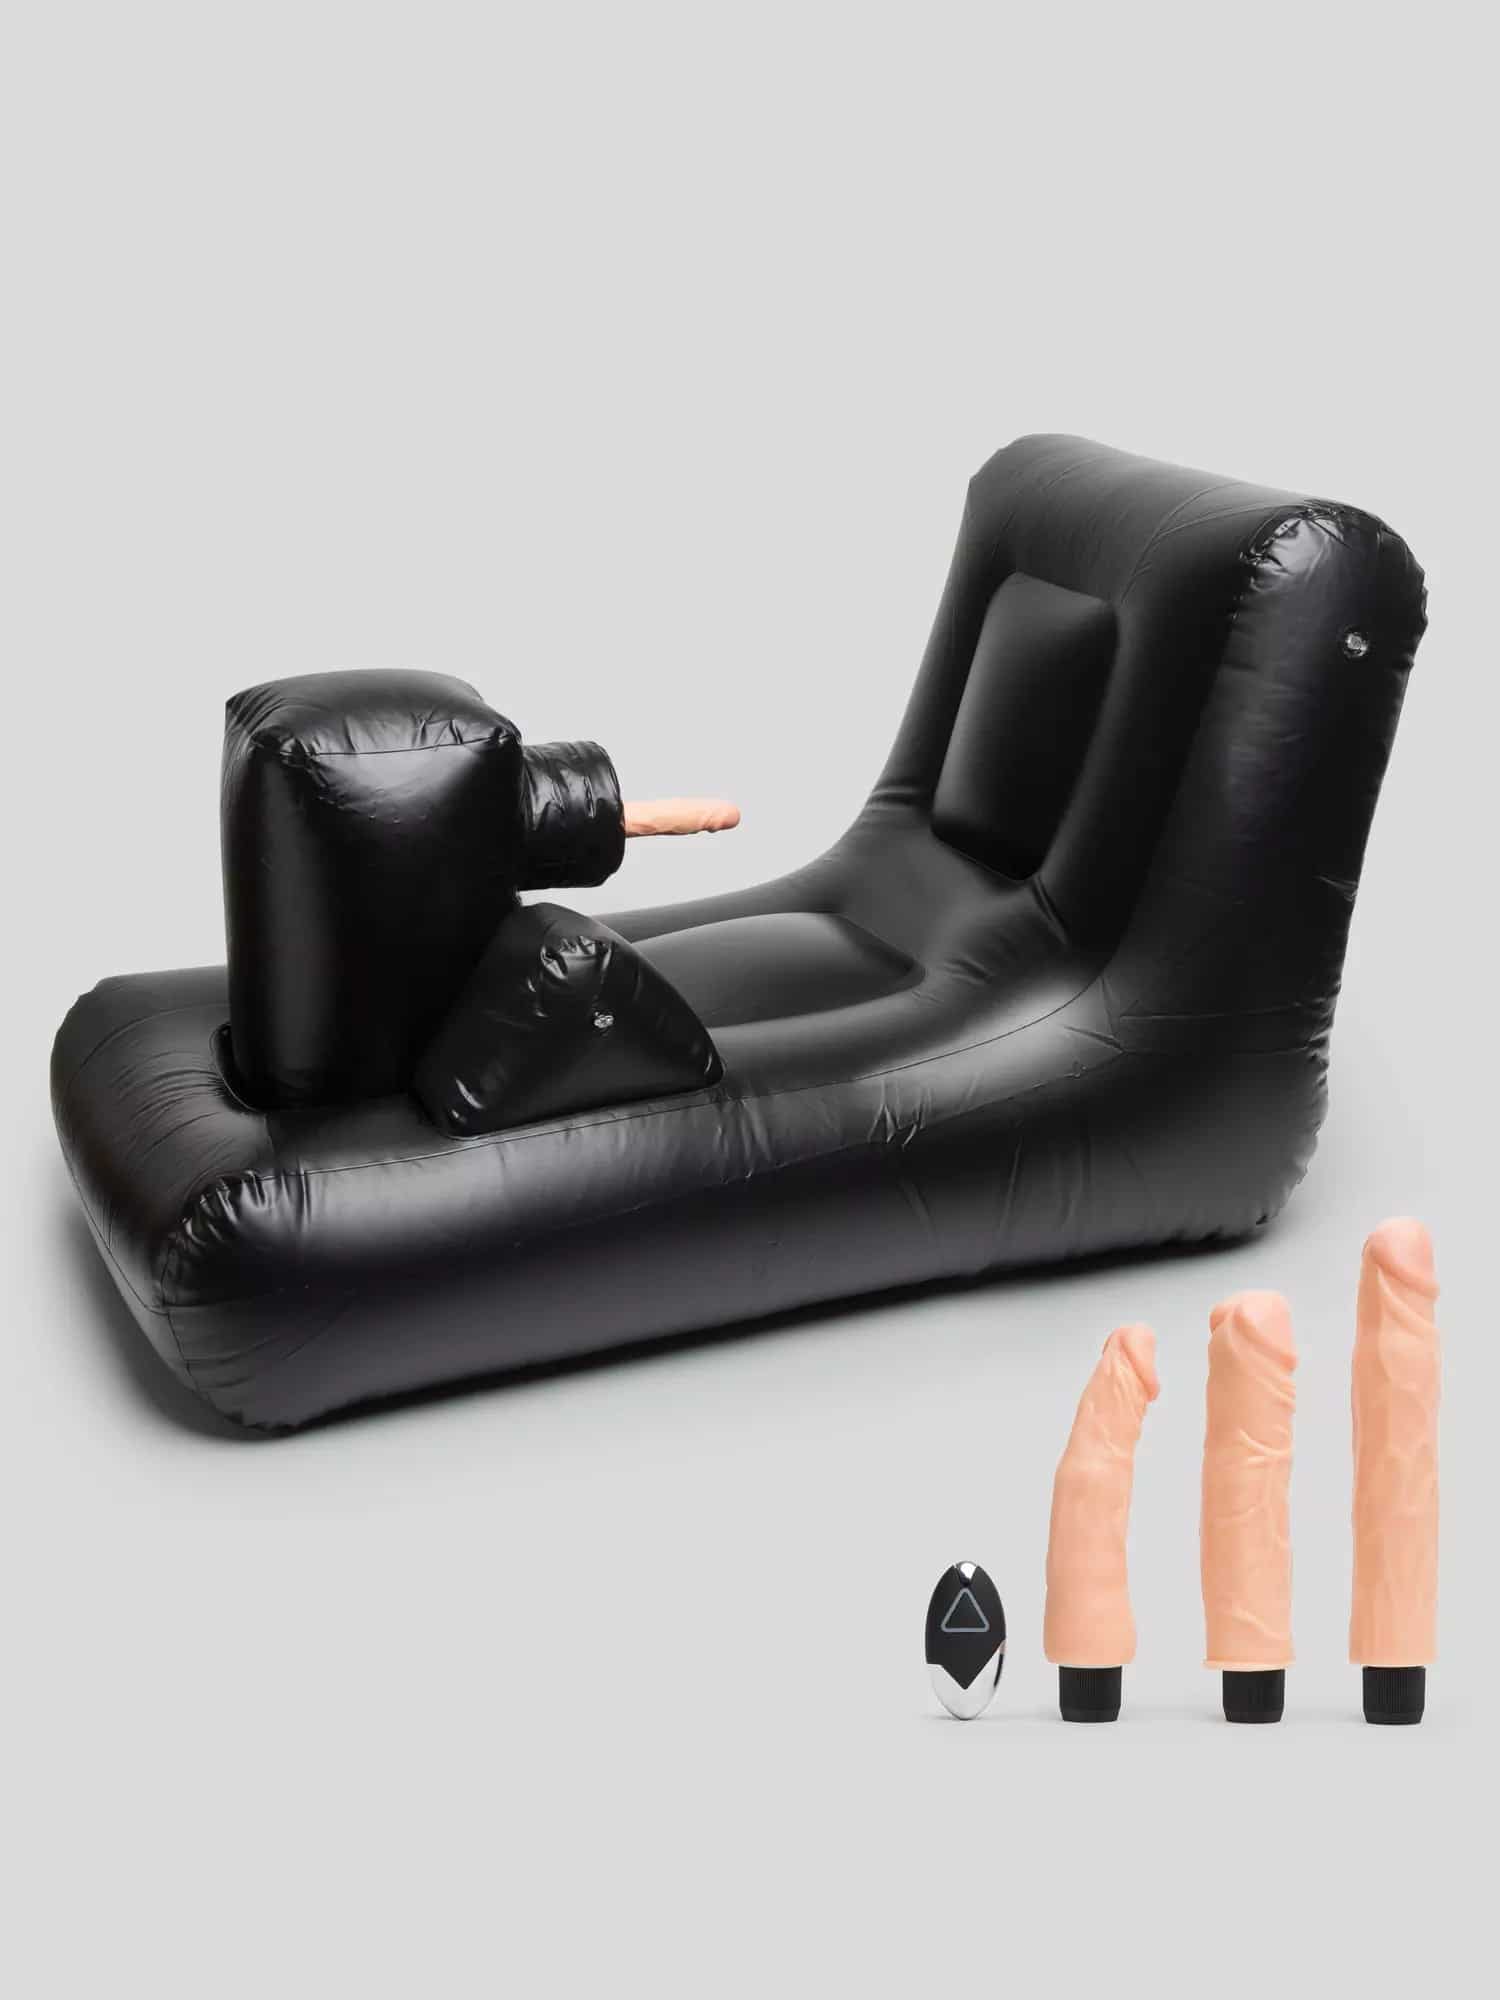 Dark Magic Inflatable Remote Control Thrusting Sex Machine